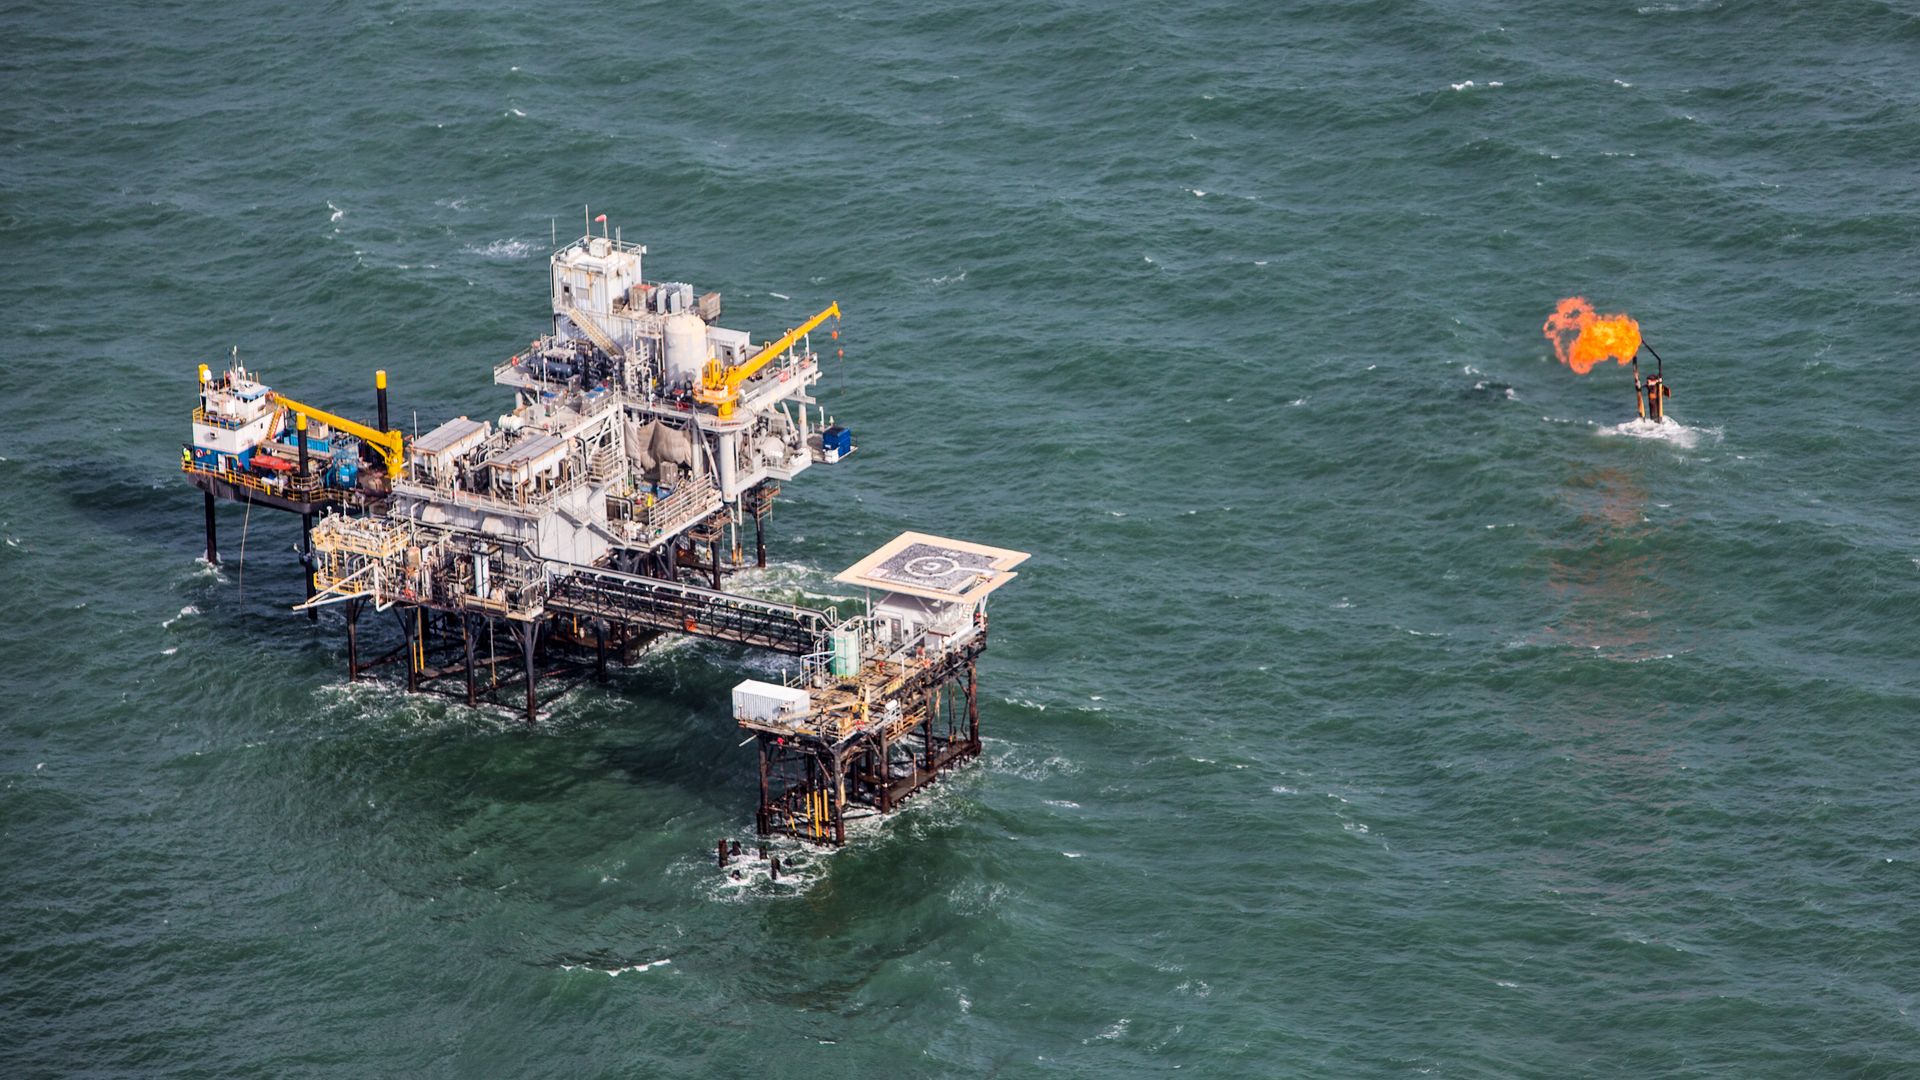 An offshore oil platform